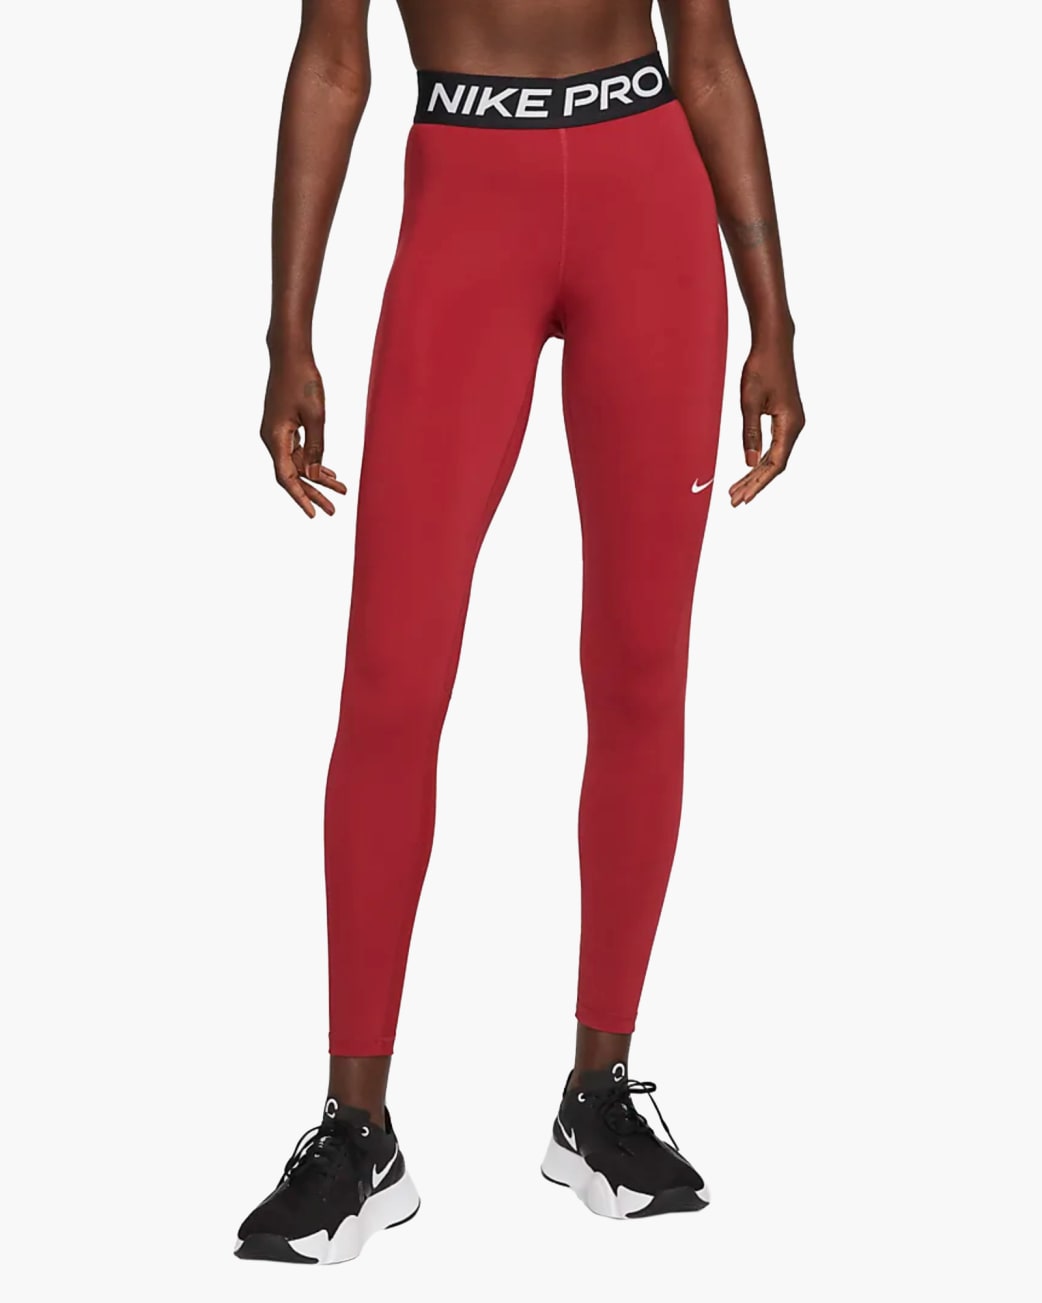 Nike Women's Pro Mid-Rise Leggings - Pomegranate Black / White Rogue Fitness